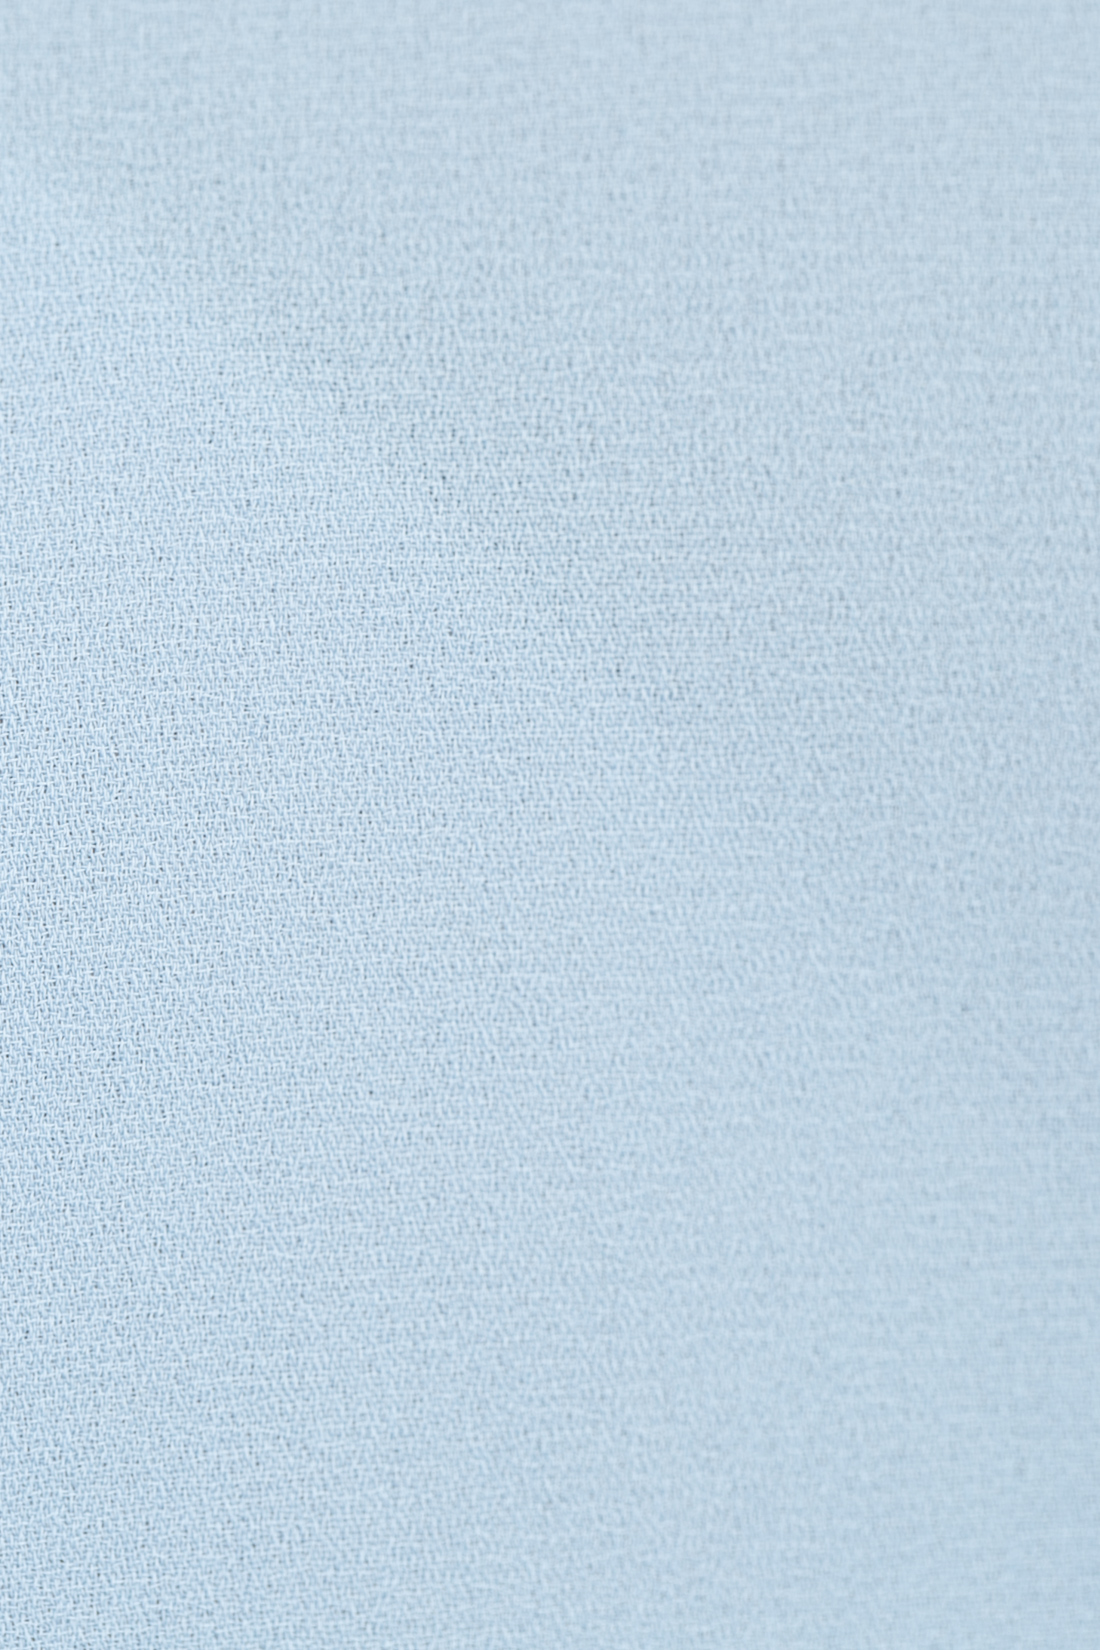 Топ с удлинённой спинкой (арт. baon B267028), размер XXL, цвет голубой Топ с удлинённой спинкой (арт. baon B267028) - фото 3